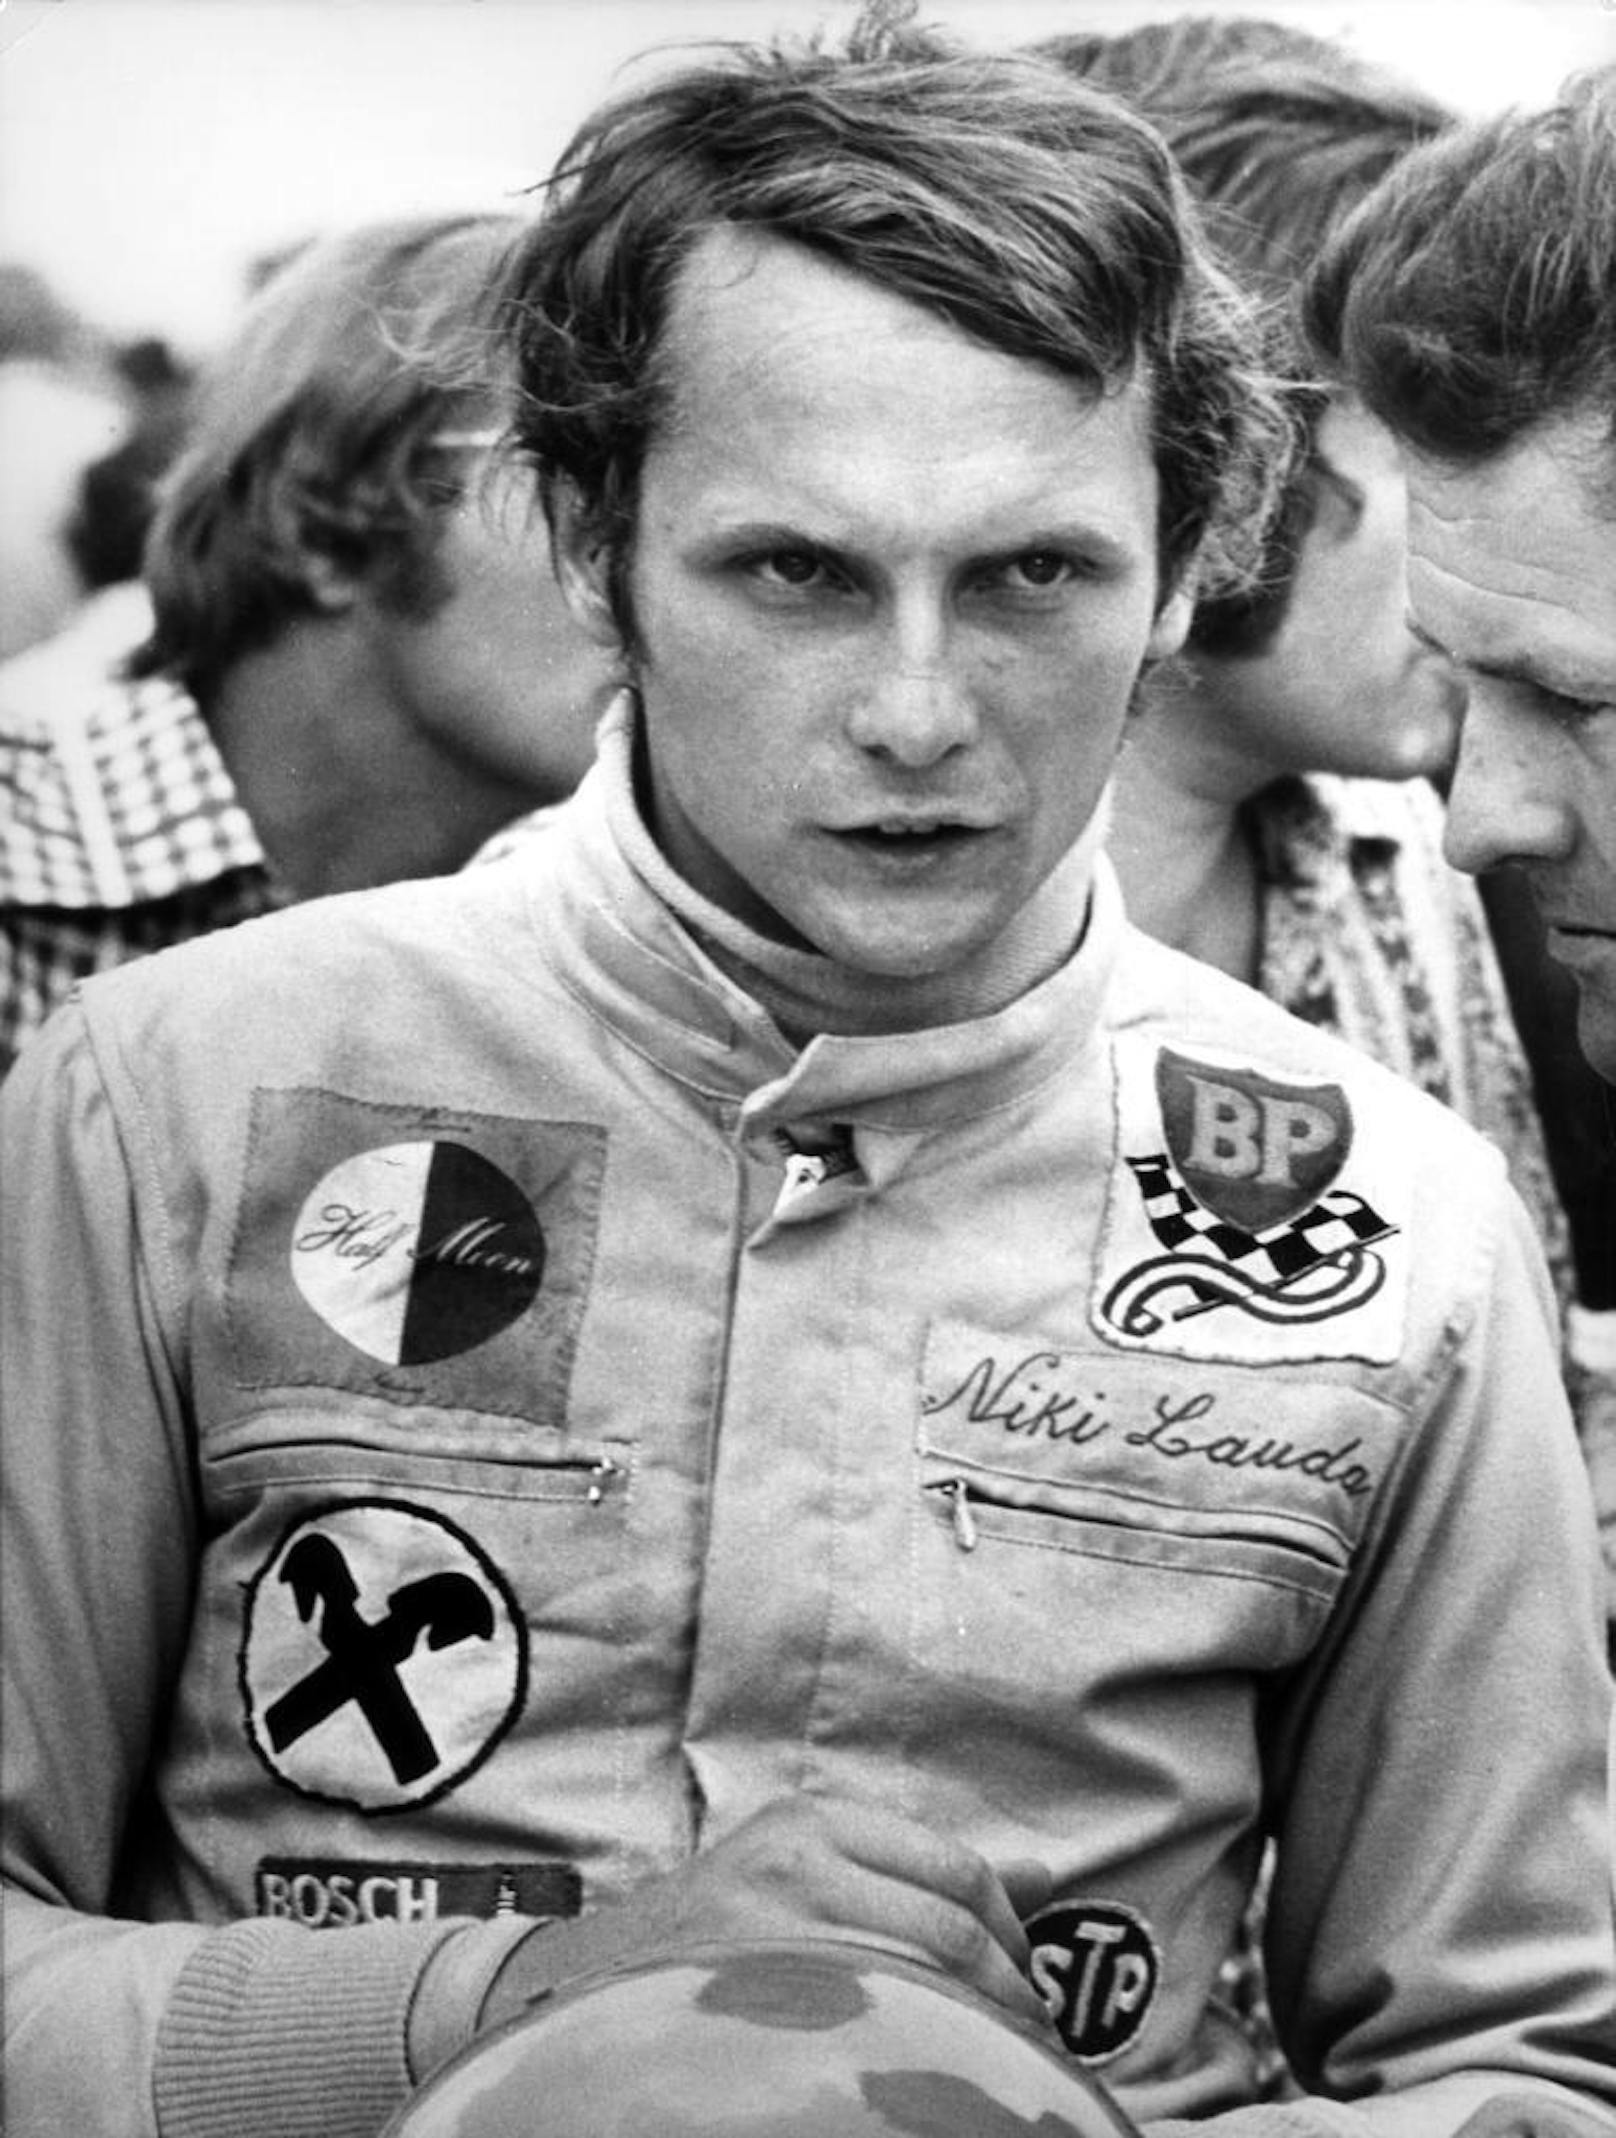 Beim Grand Prix von Österreich 1971 feierte Lauda sein Formel 1-Debüt, im March-Ford schied er aber aus.